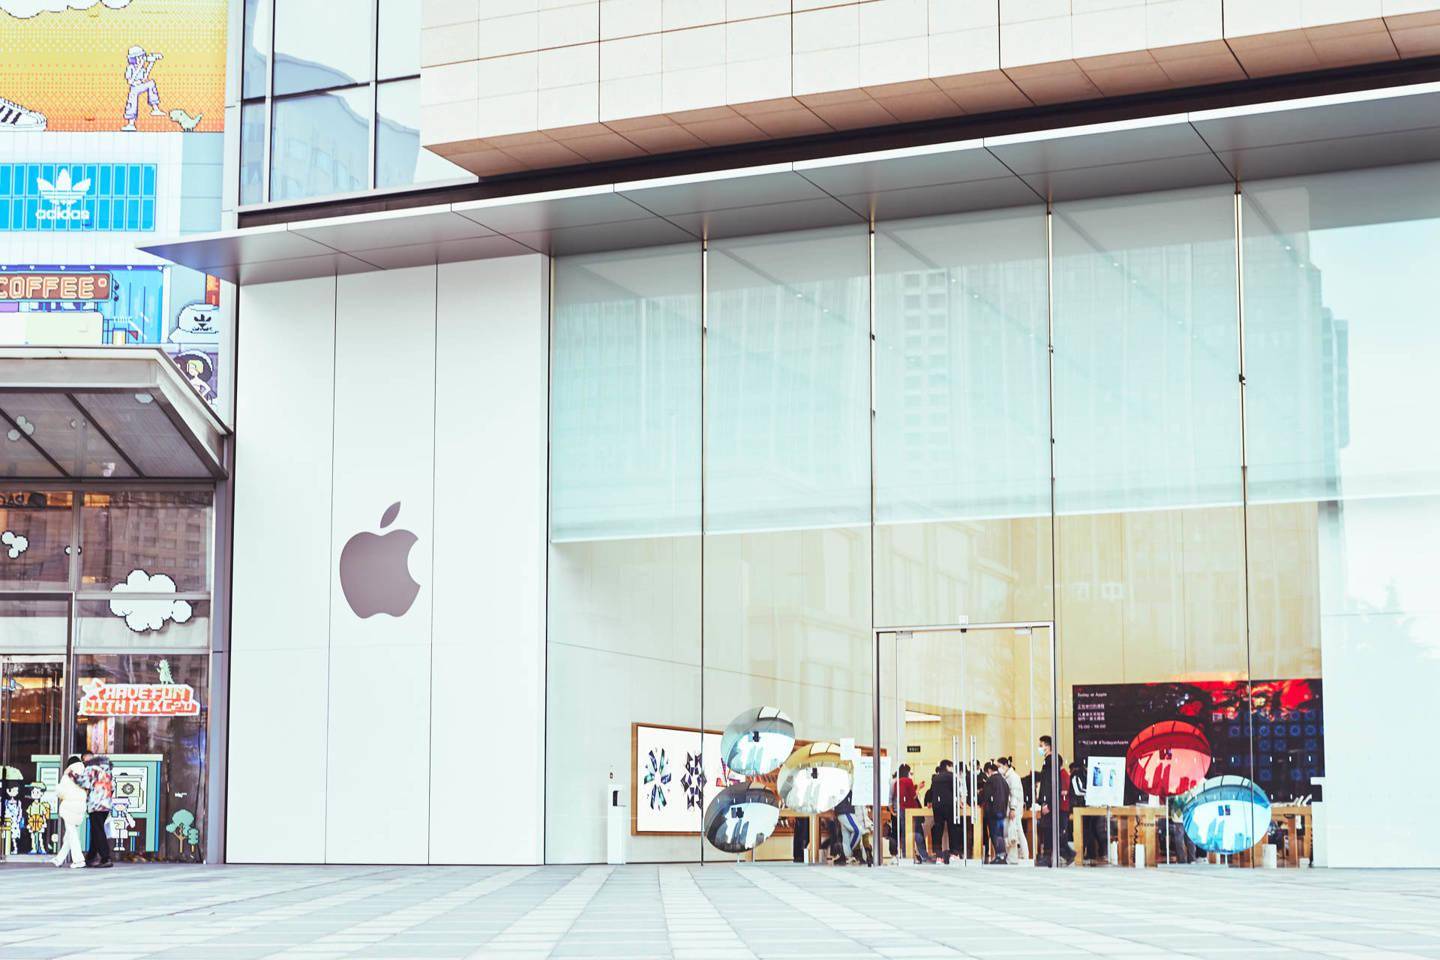 苹果公司计划裁减其零售团队中负责开发和维护的一小部分员工。这些员工主要负责苹果在全球范围内的零售店的建设和维护工作。